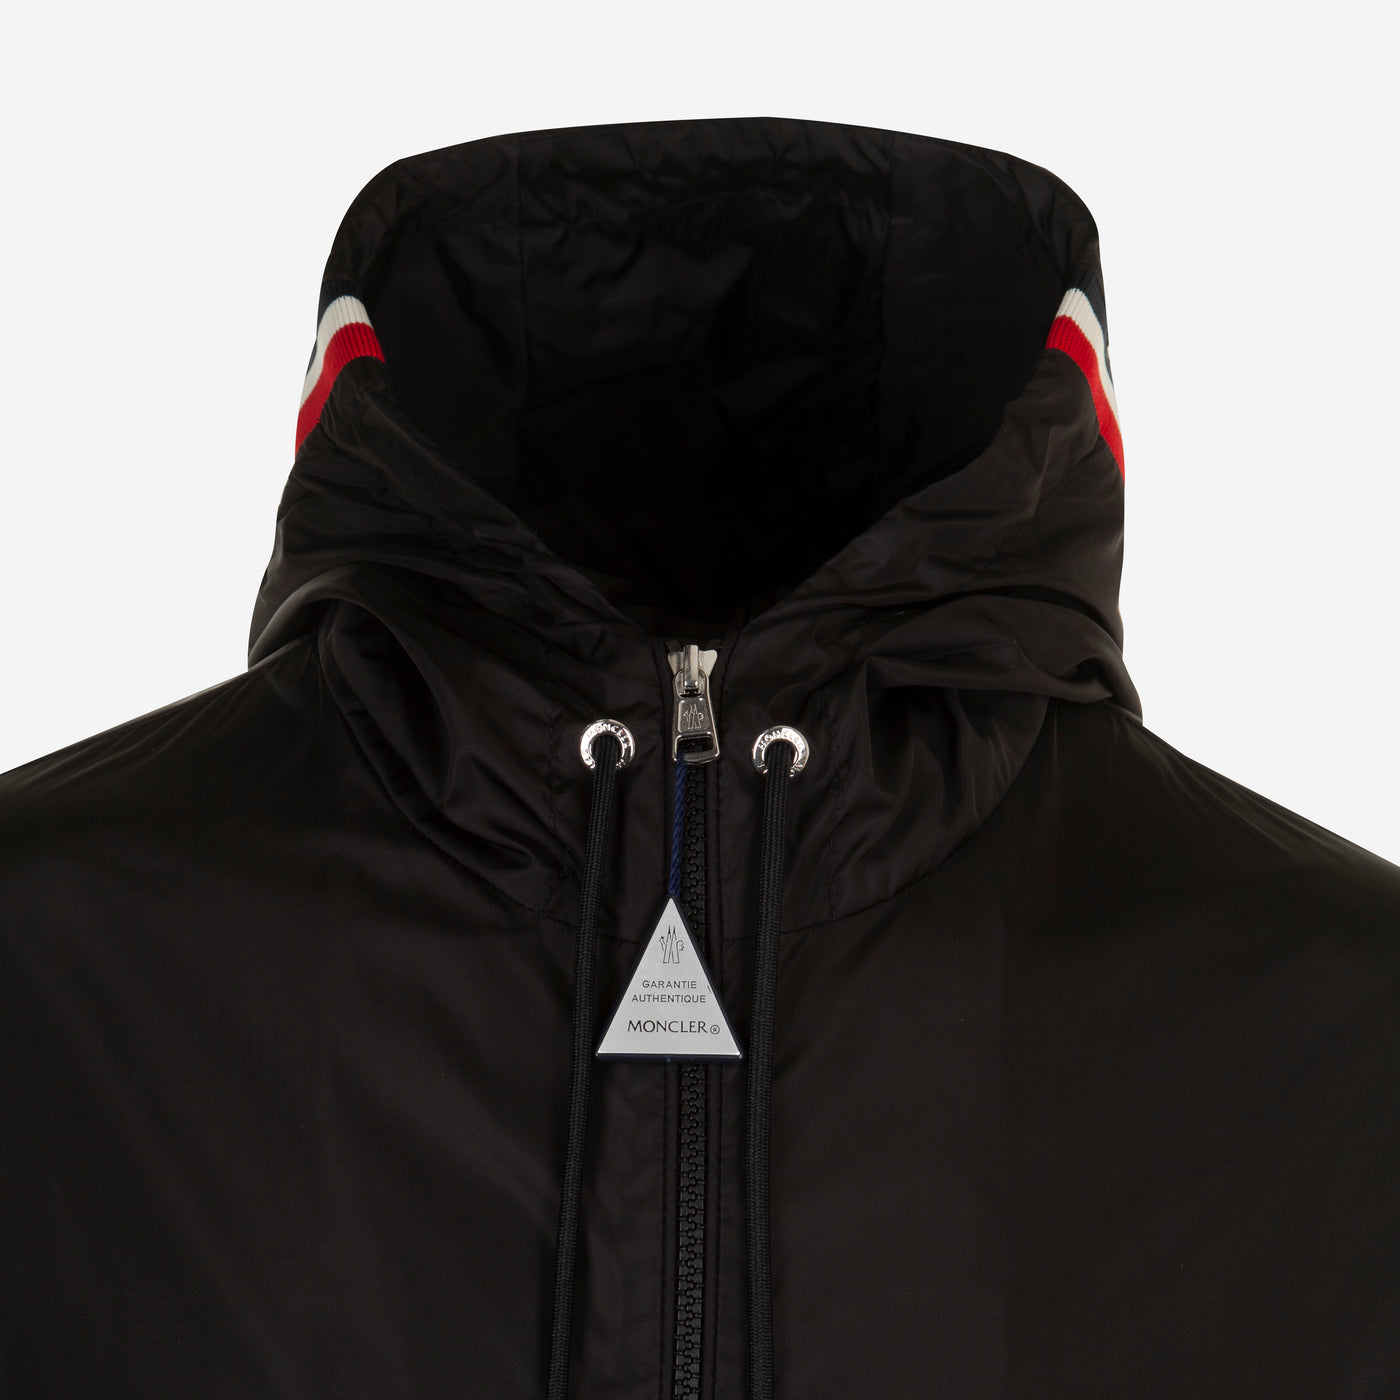 Moncler Grimpeurs Hooded Jacket